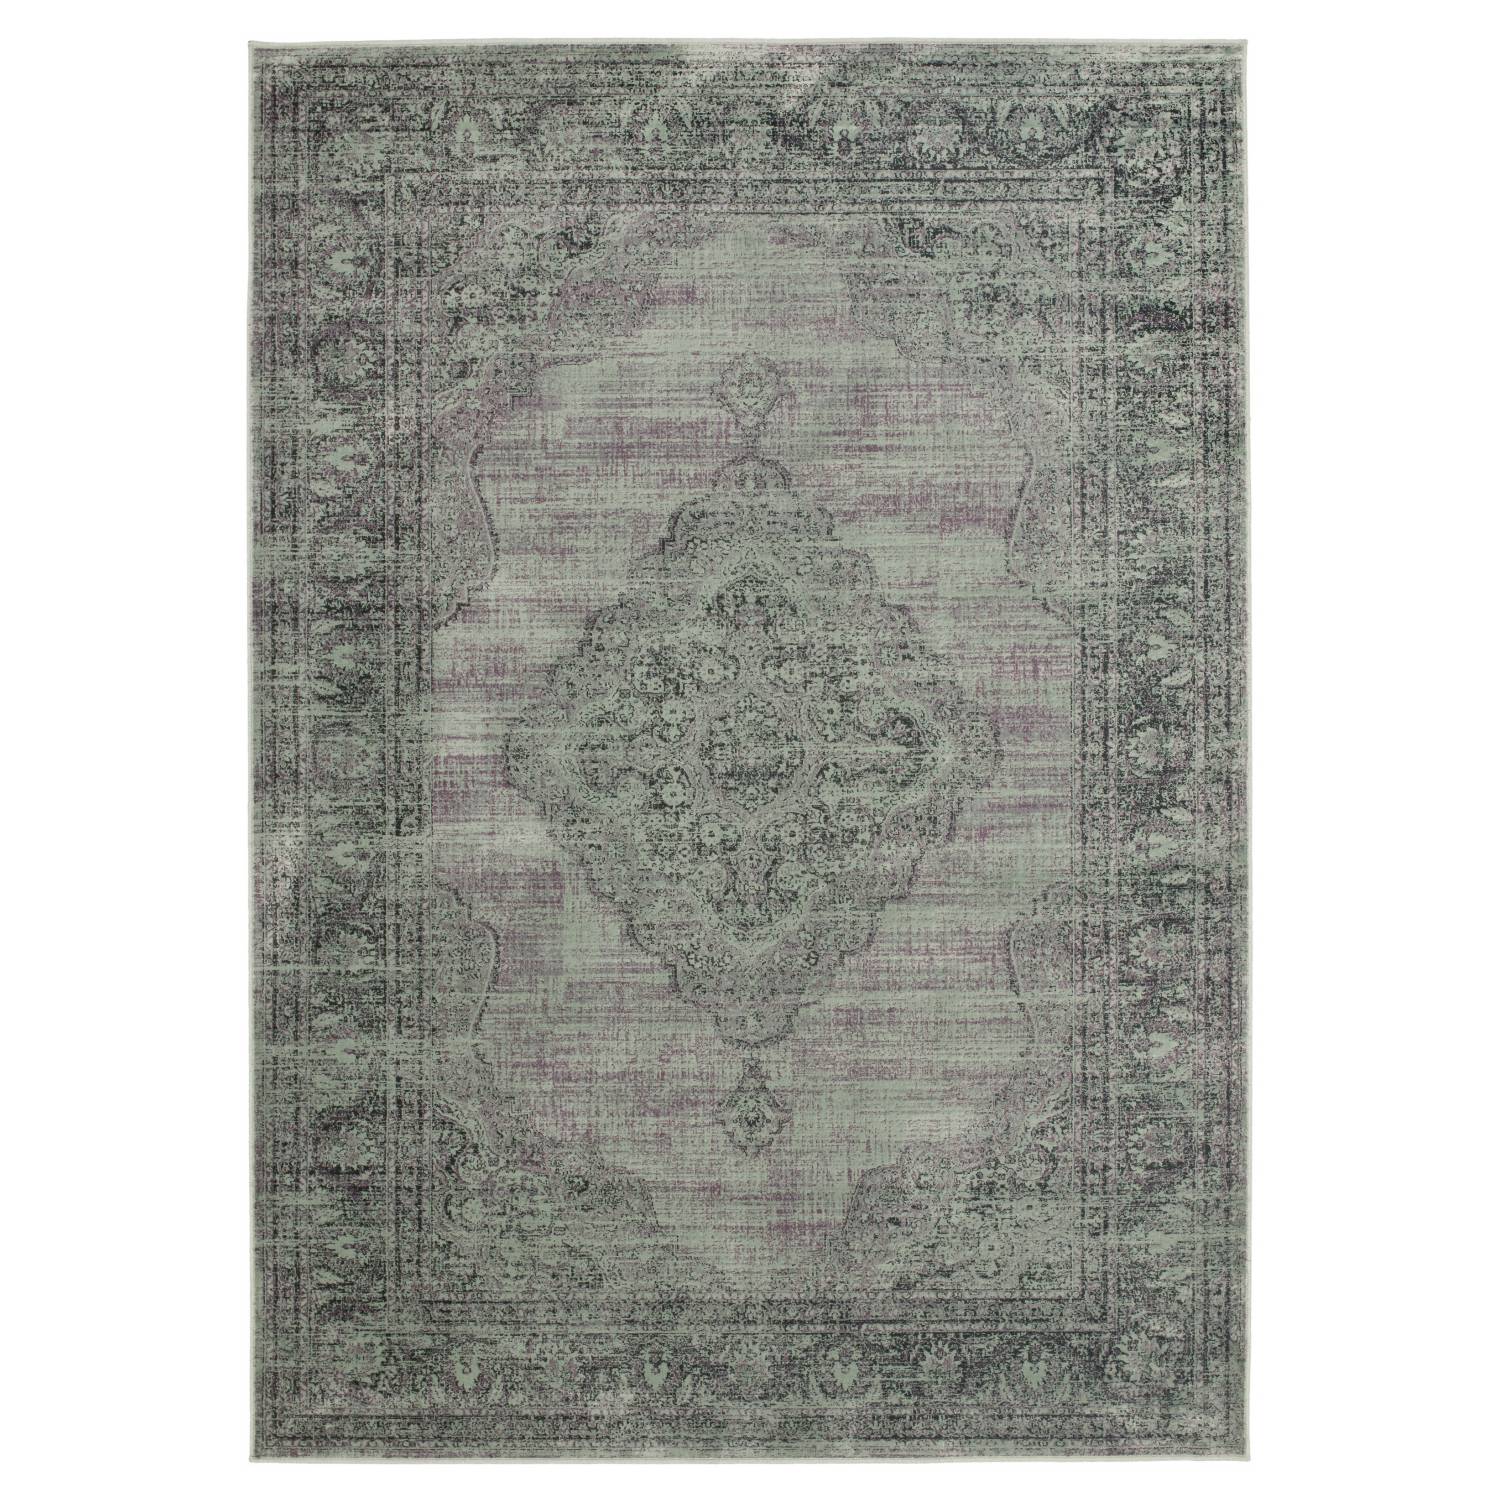 Teppich Olivia - Vintage Graublau - 122 x 171 cm, Safavieh